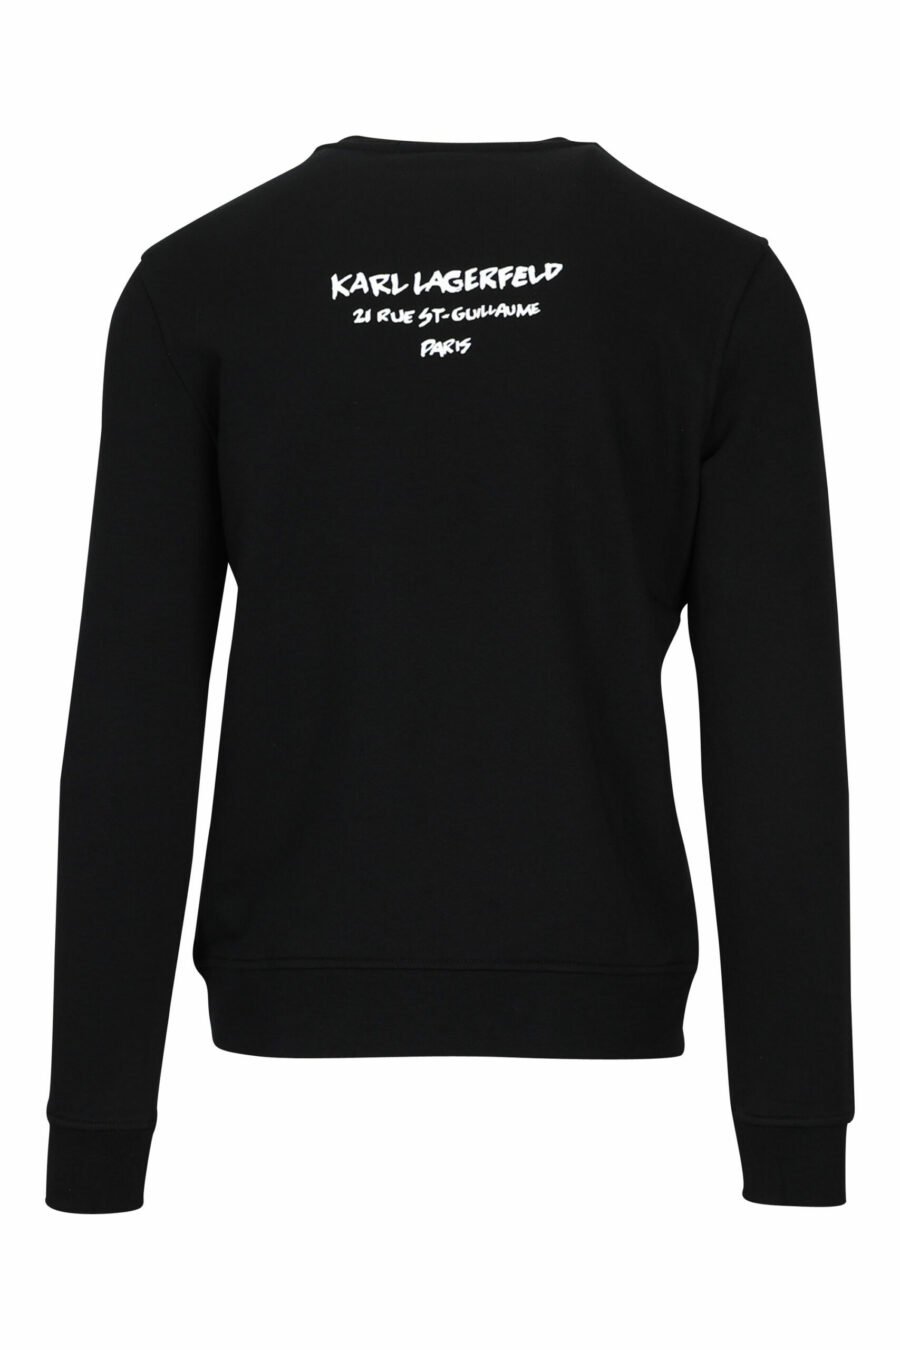 Schwarzes Sweatshirt mit "karl" Tarnprofil - 4062226395816 1 skaliert